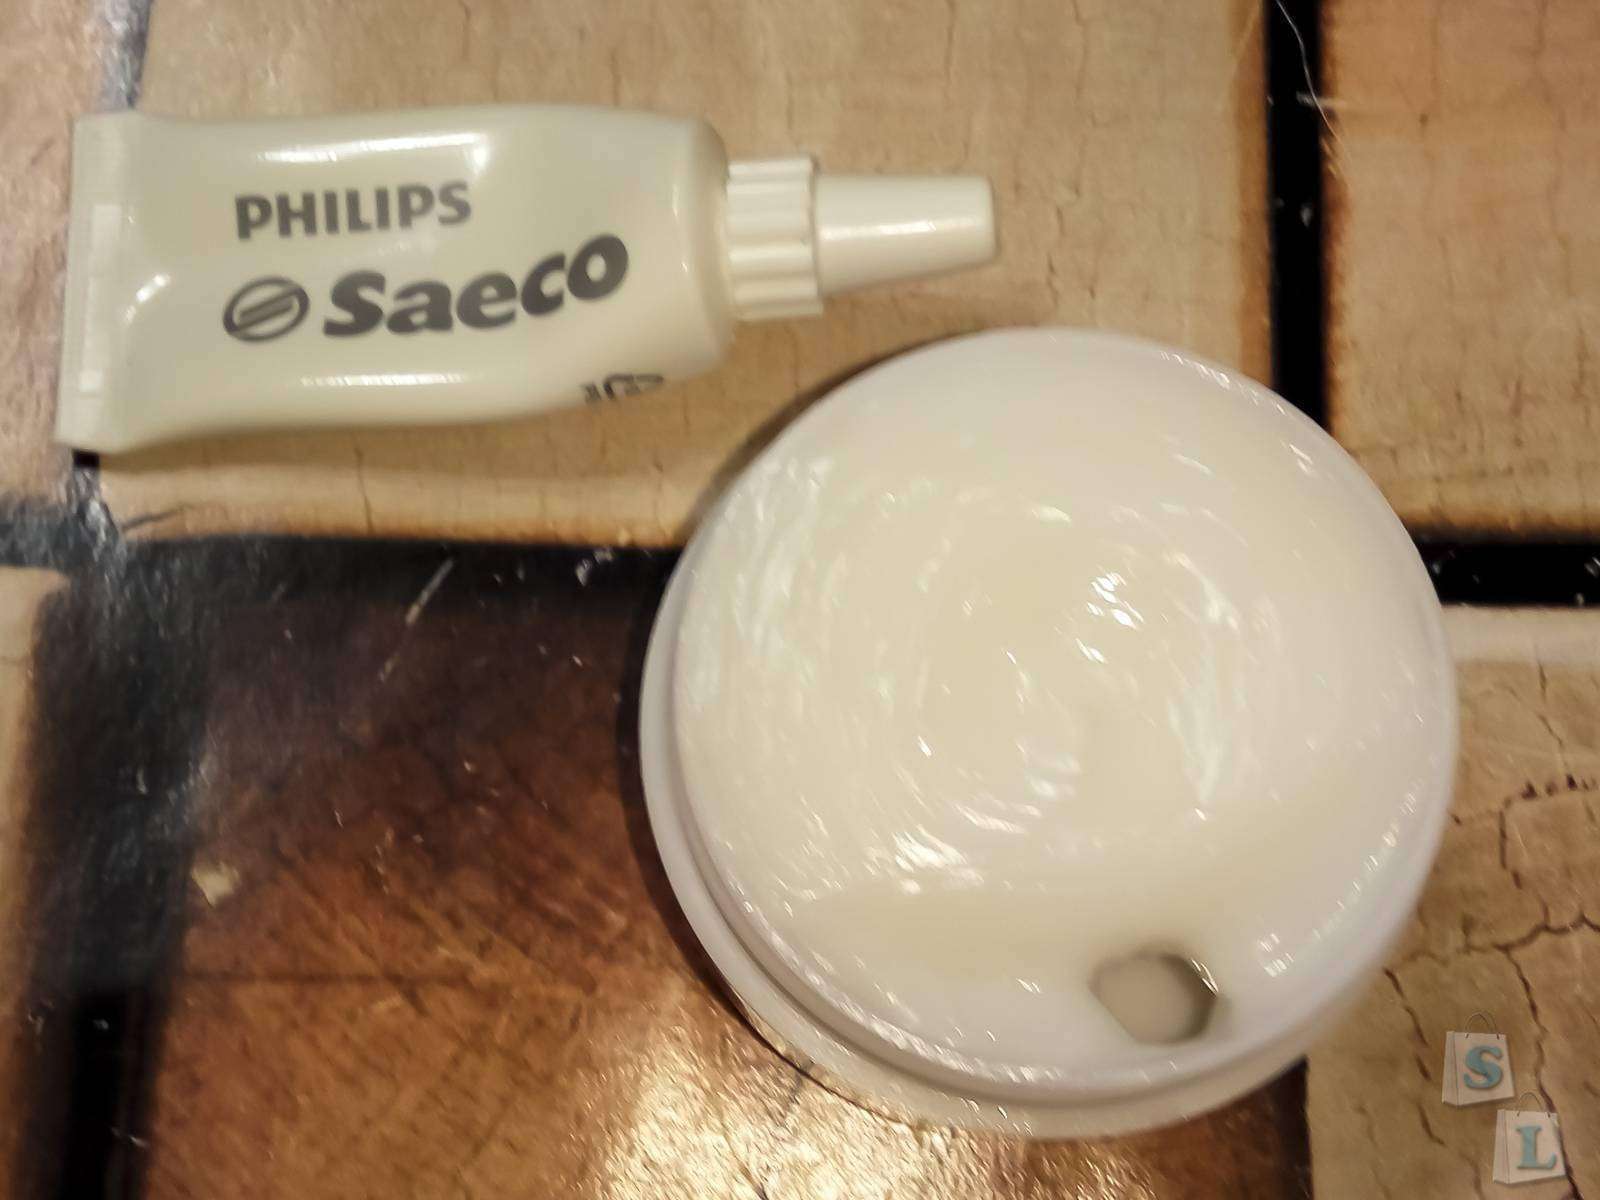  силиконовая смазка для кофемашины Philips Saeco / GearBest .